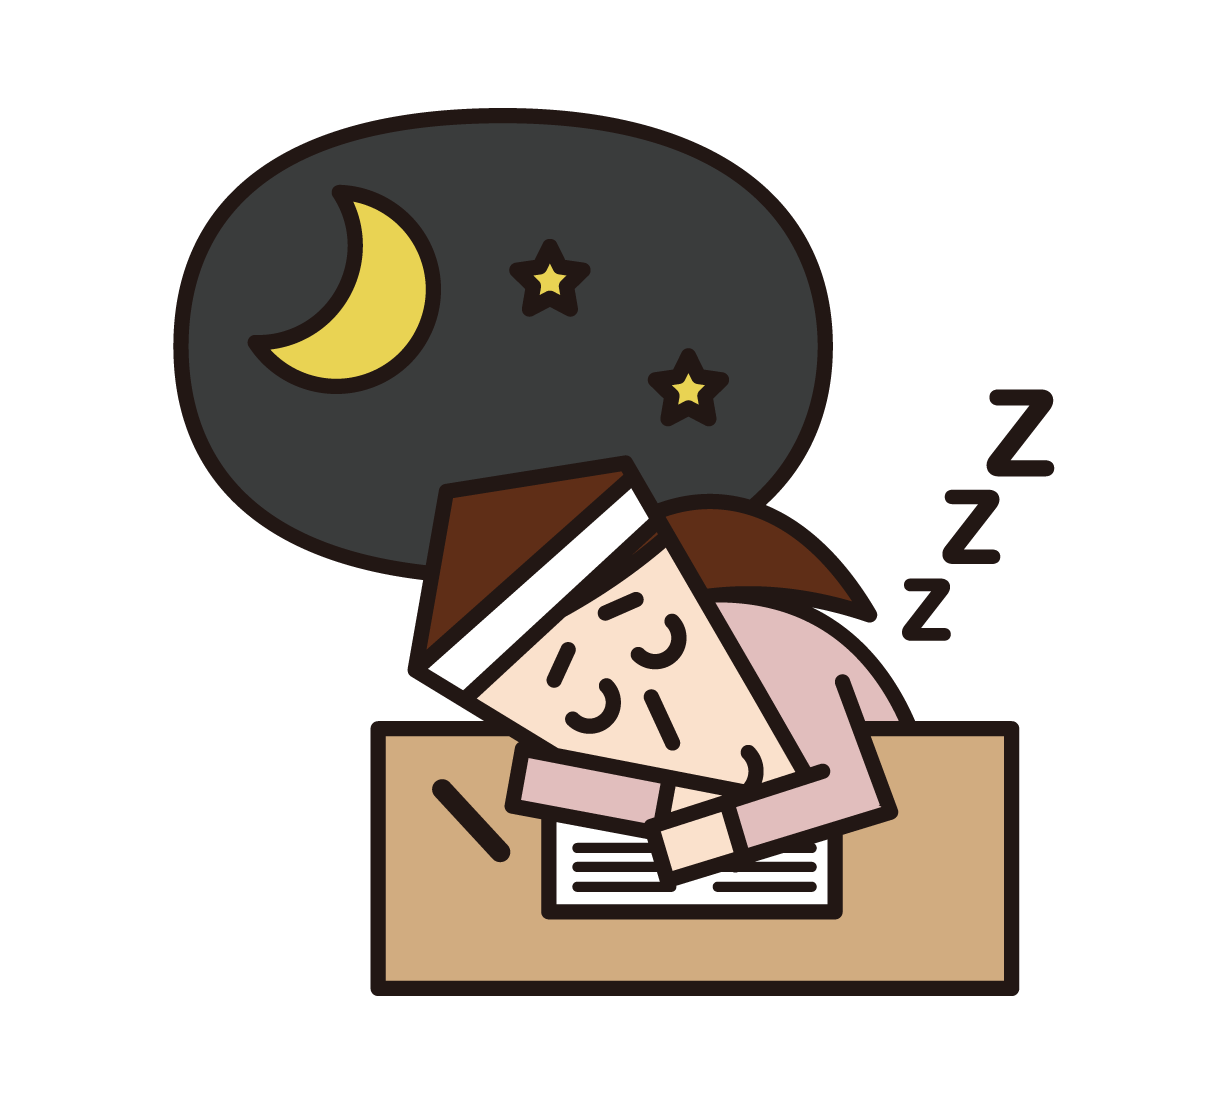 입시를 위해 공부하는 동안 피곤하고 자고있는 사람 (여성)의 삽화